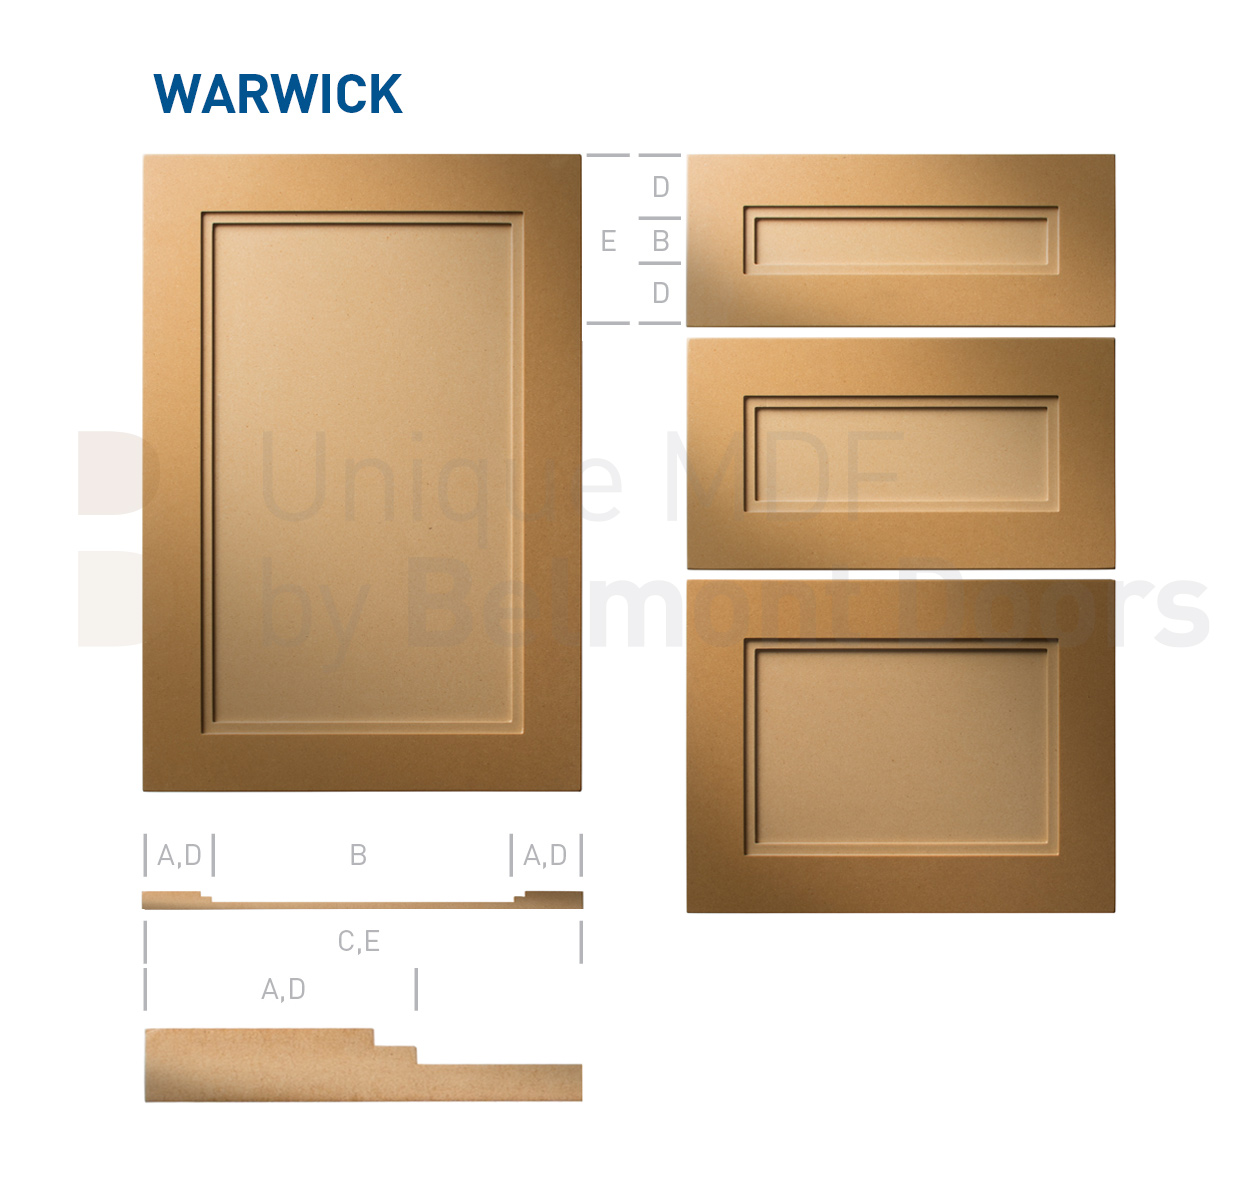 Warwick-Shaker-MDF-Doors-Flat Panel Kitchen Cabinet Doors Drawers by BelmontDoors.com